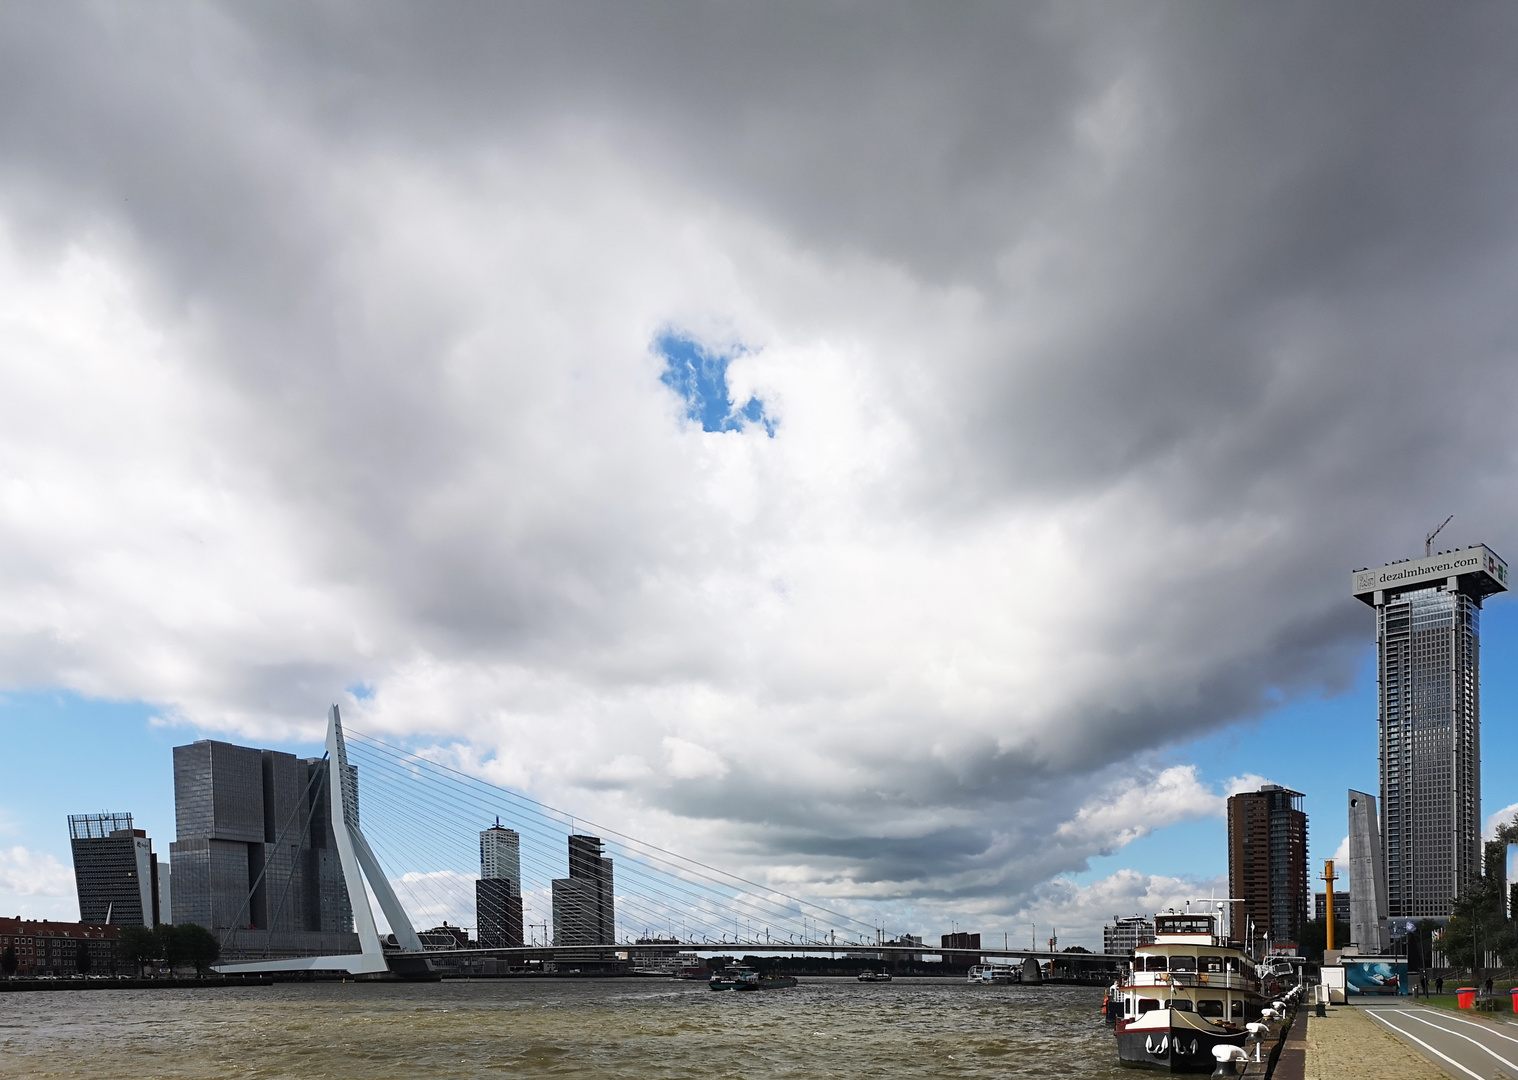 Wolkenband über Rotterdam